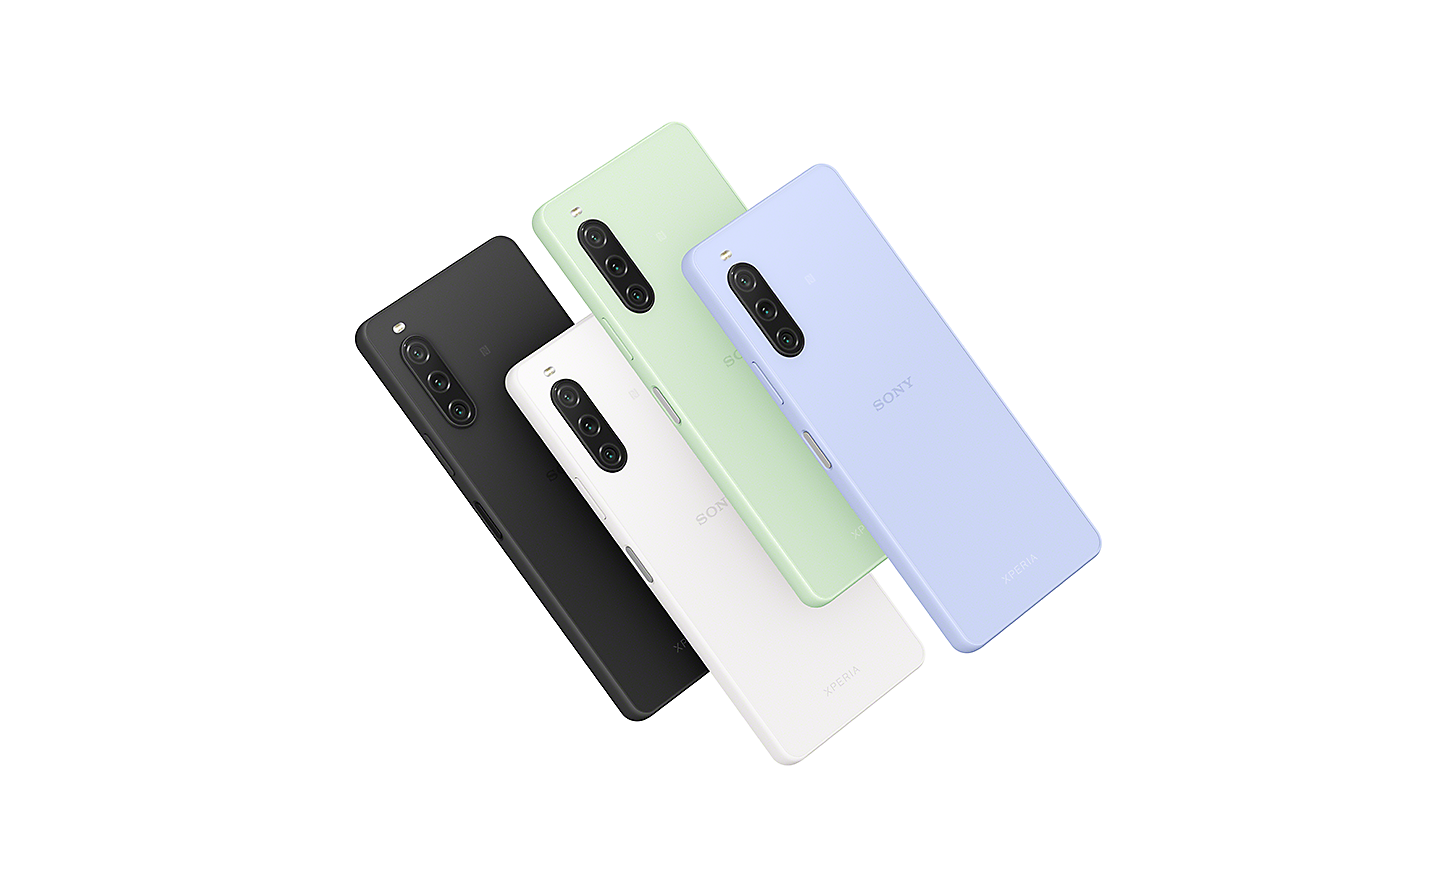 Smartfóny Xperia 10 V otočené dozadu vo farbách čierna, biela, šalviová zelená a levanduľová